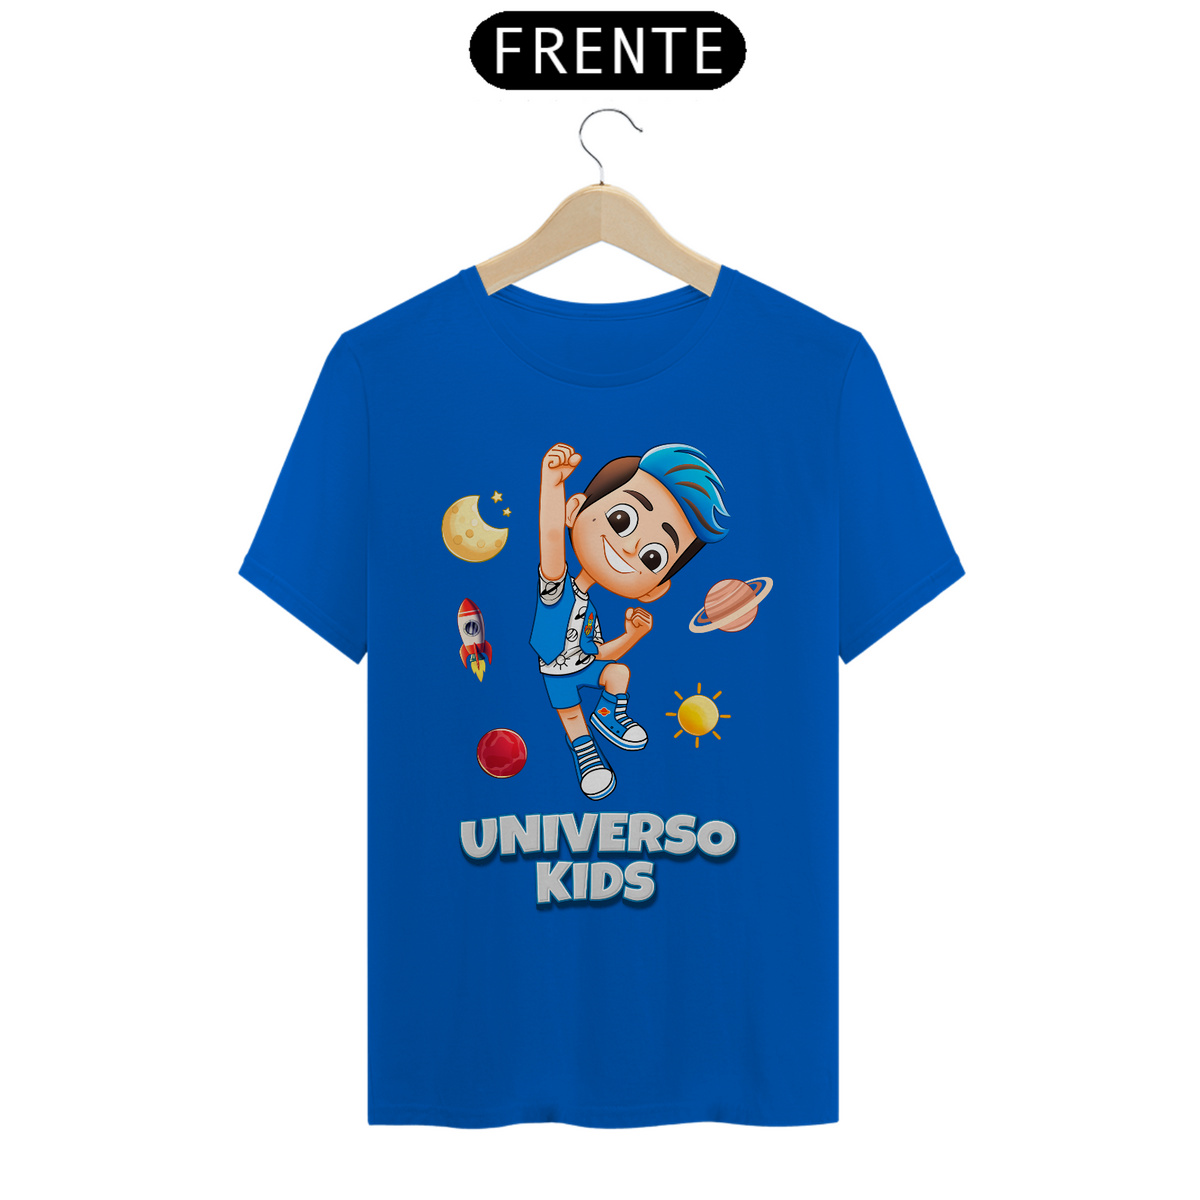 Nome do produto: Camiseta Universo Kids VAMOS NESSA!